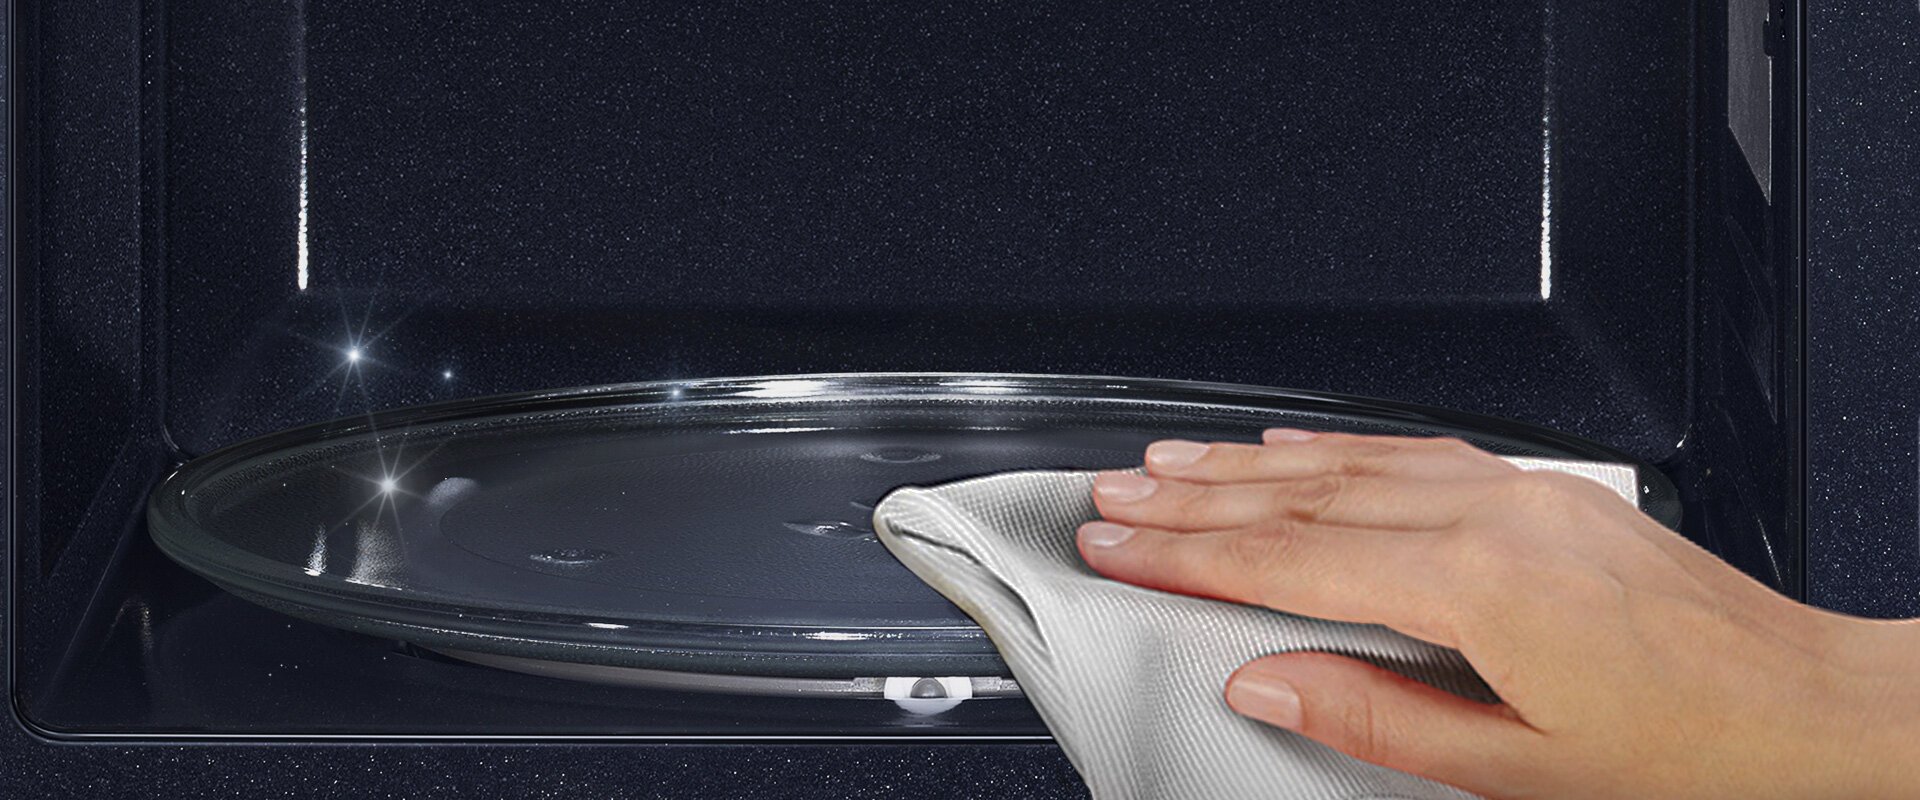 Wnętrze kuchenki mikrofalowej Samsung pokryte trwałą emalią ceramiczną